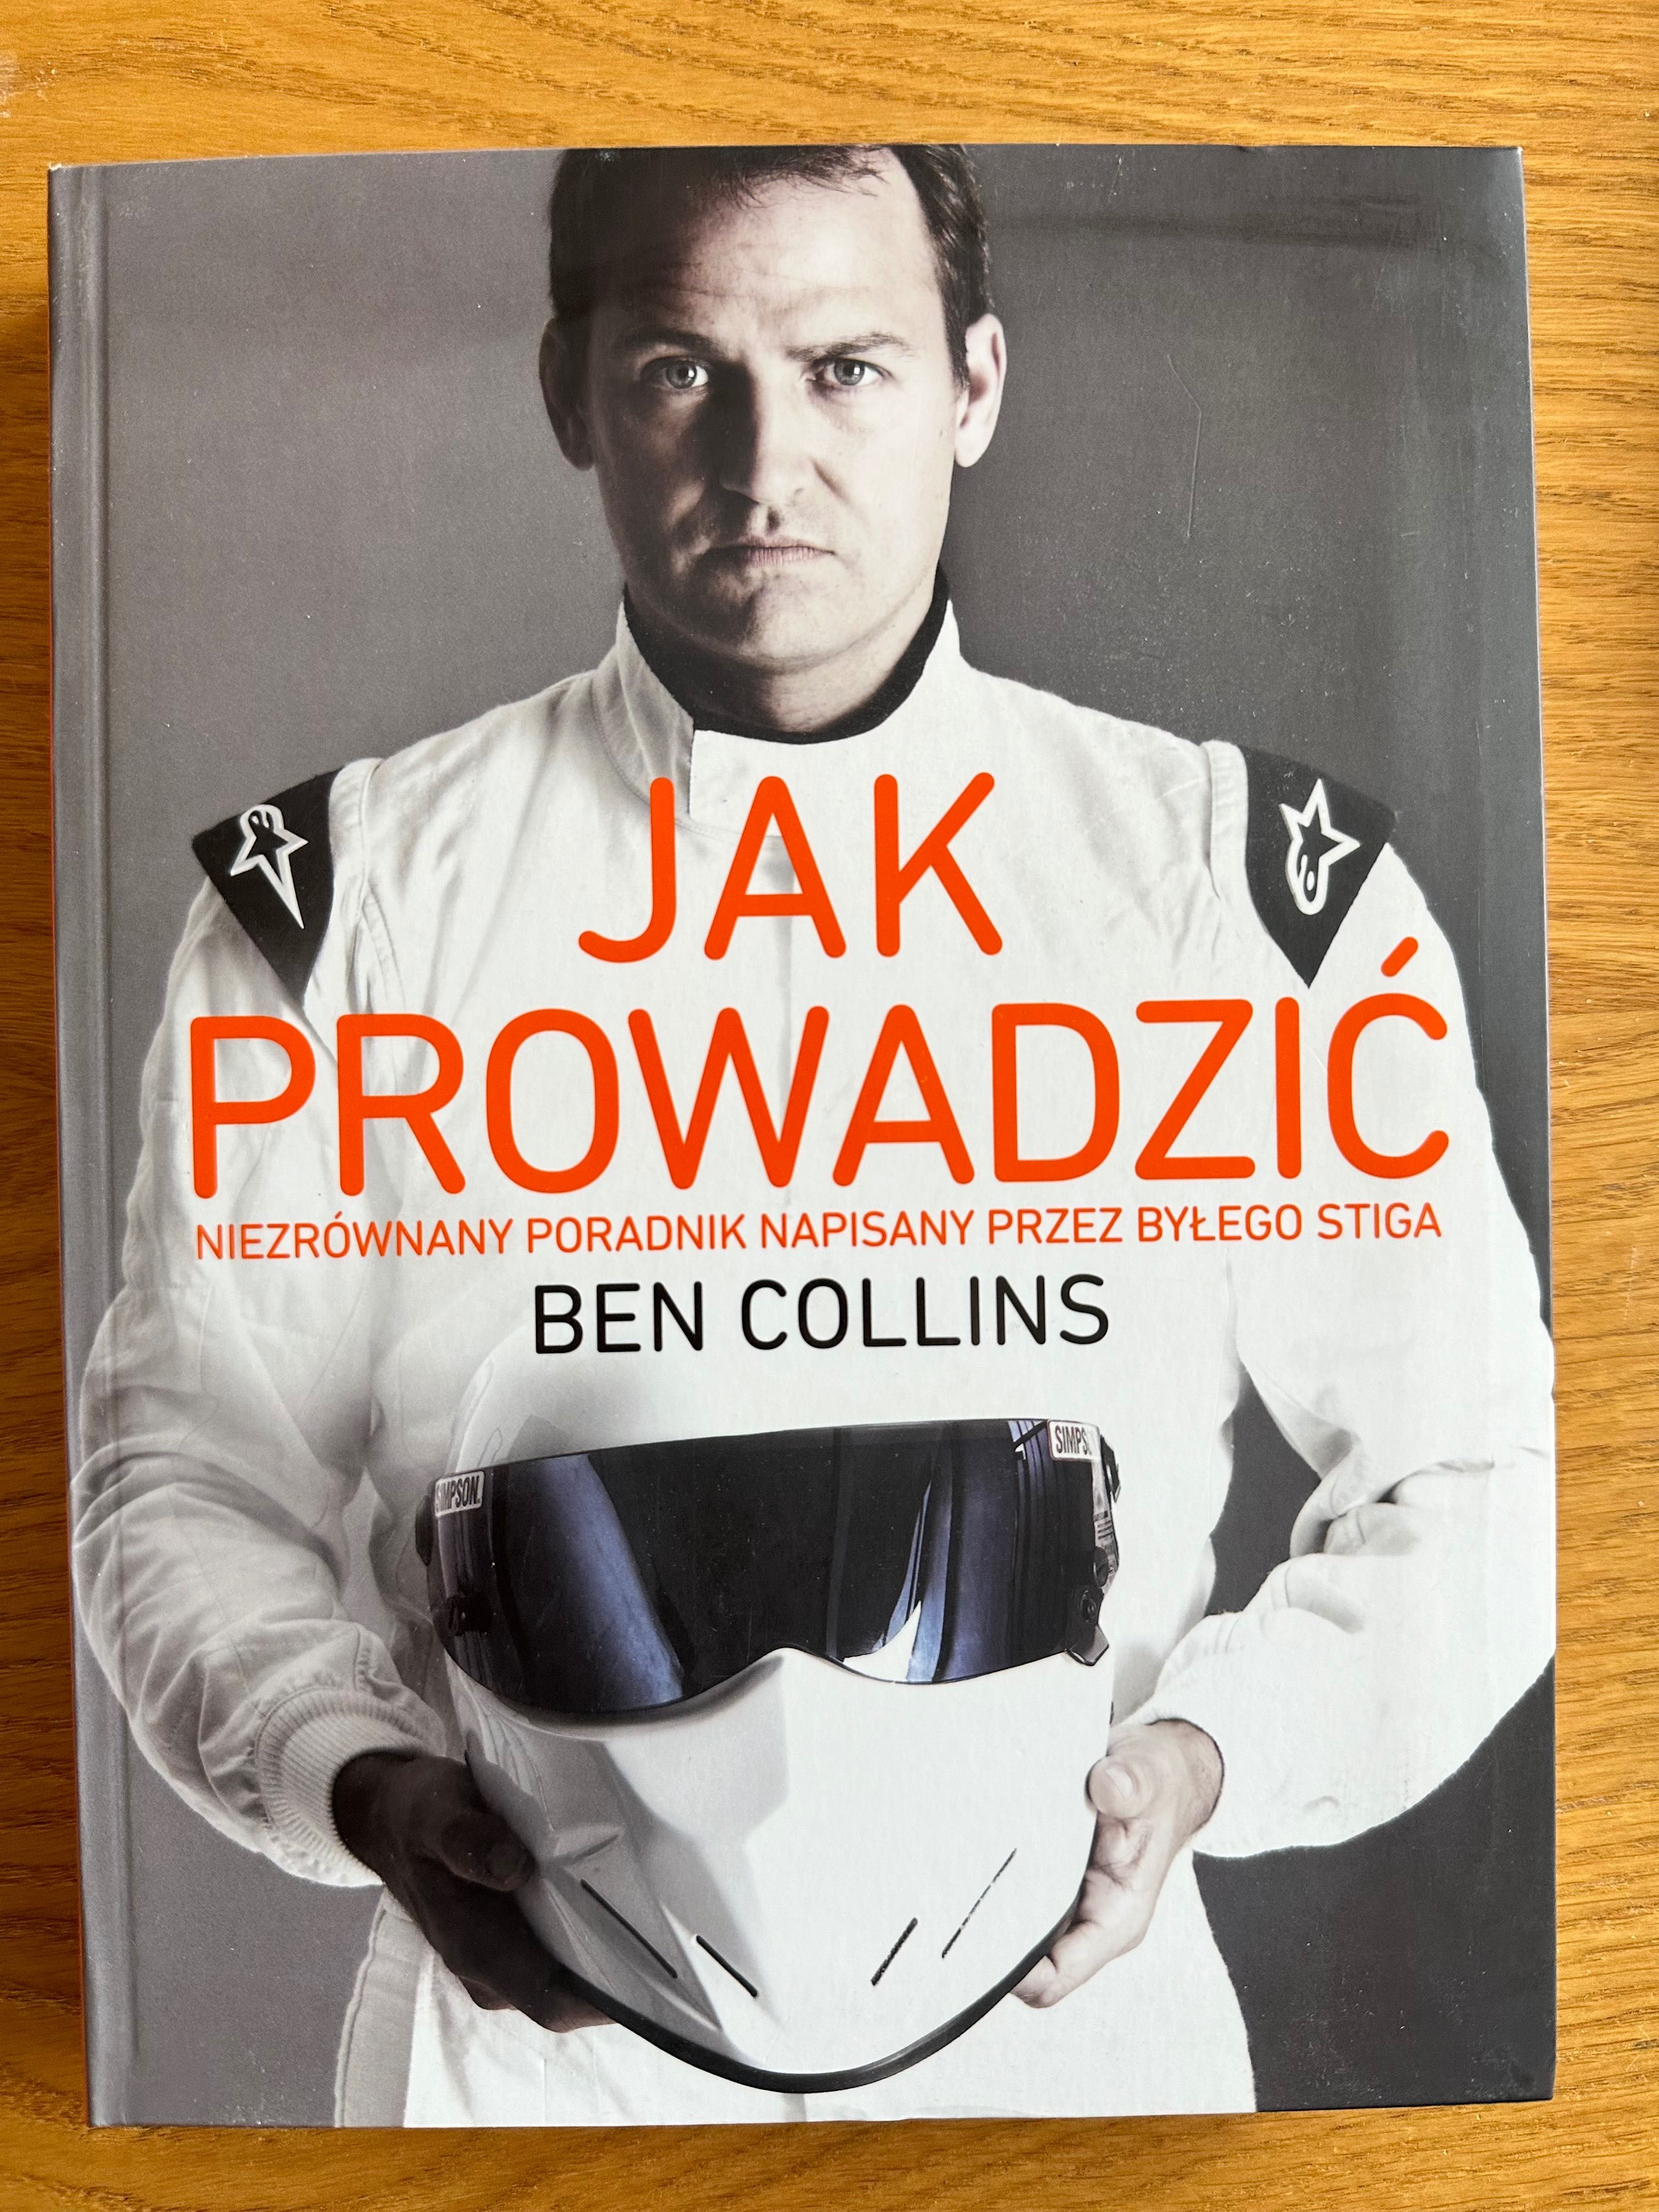 Książka ‘Jak prowadzić’ Ben Collins, nowa, nie używana